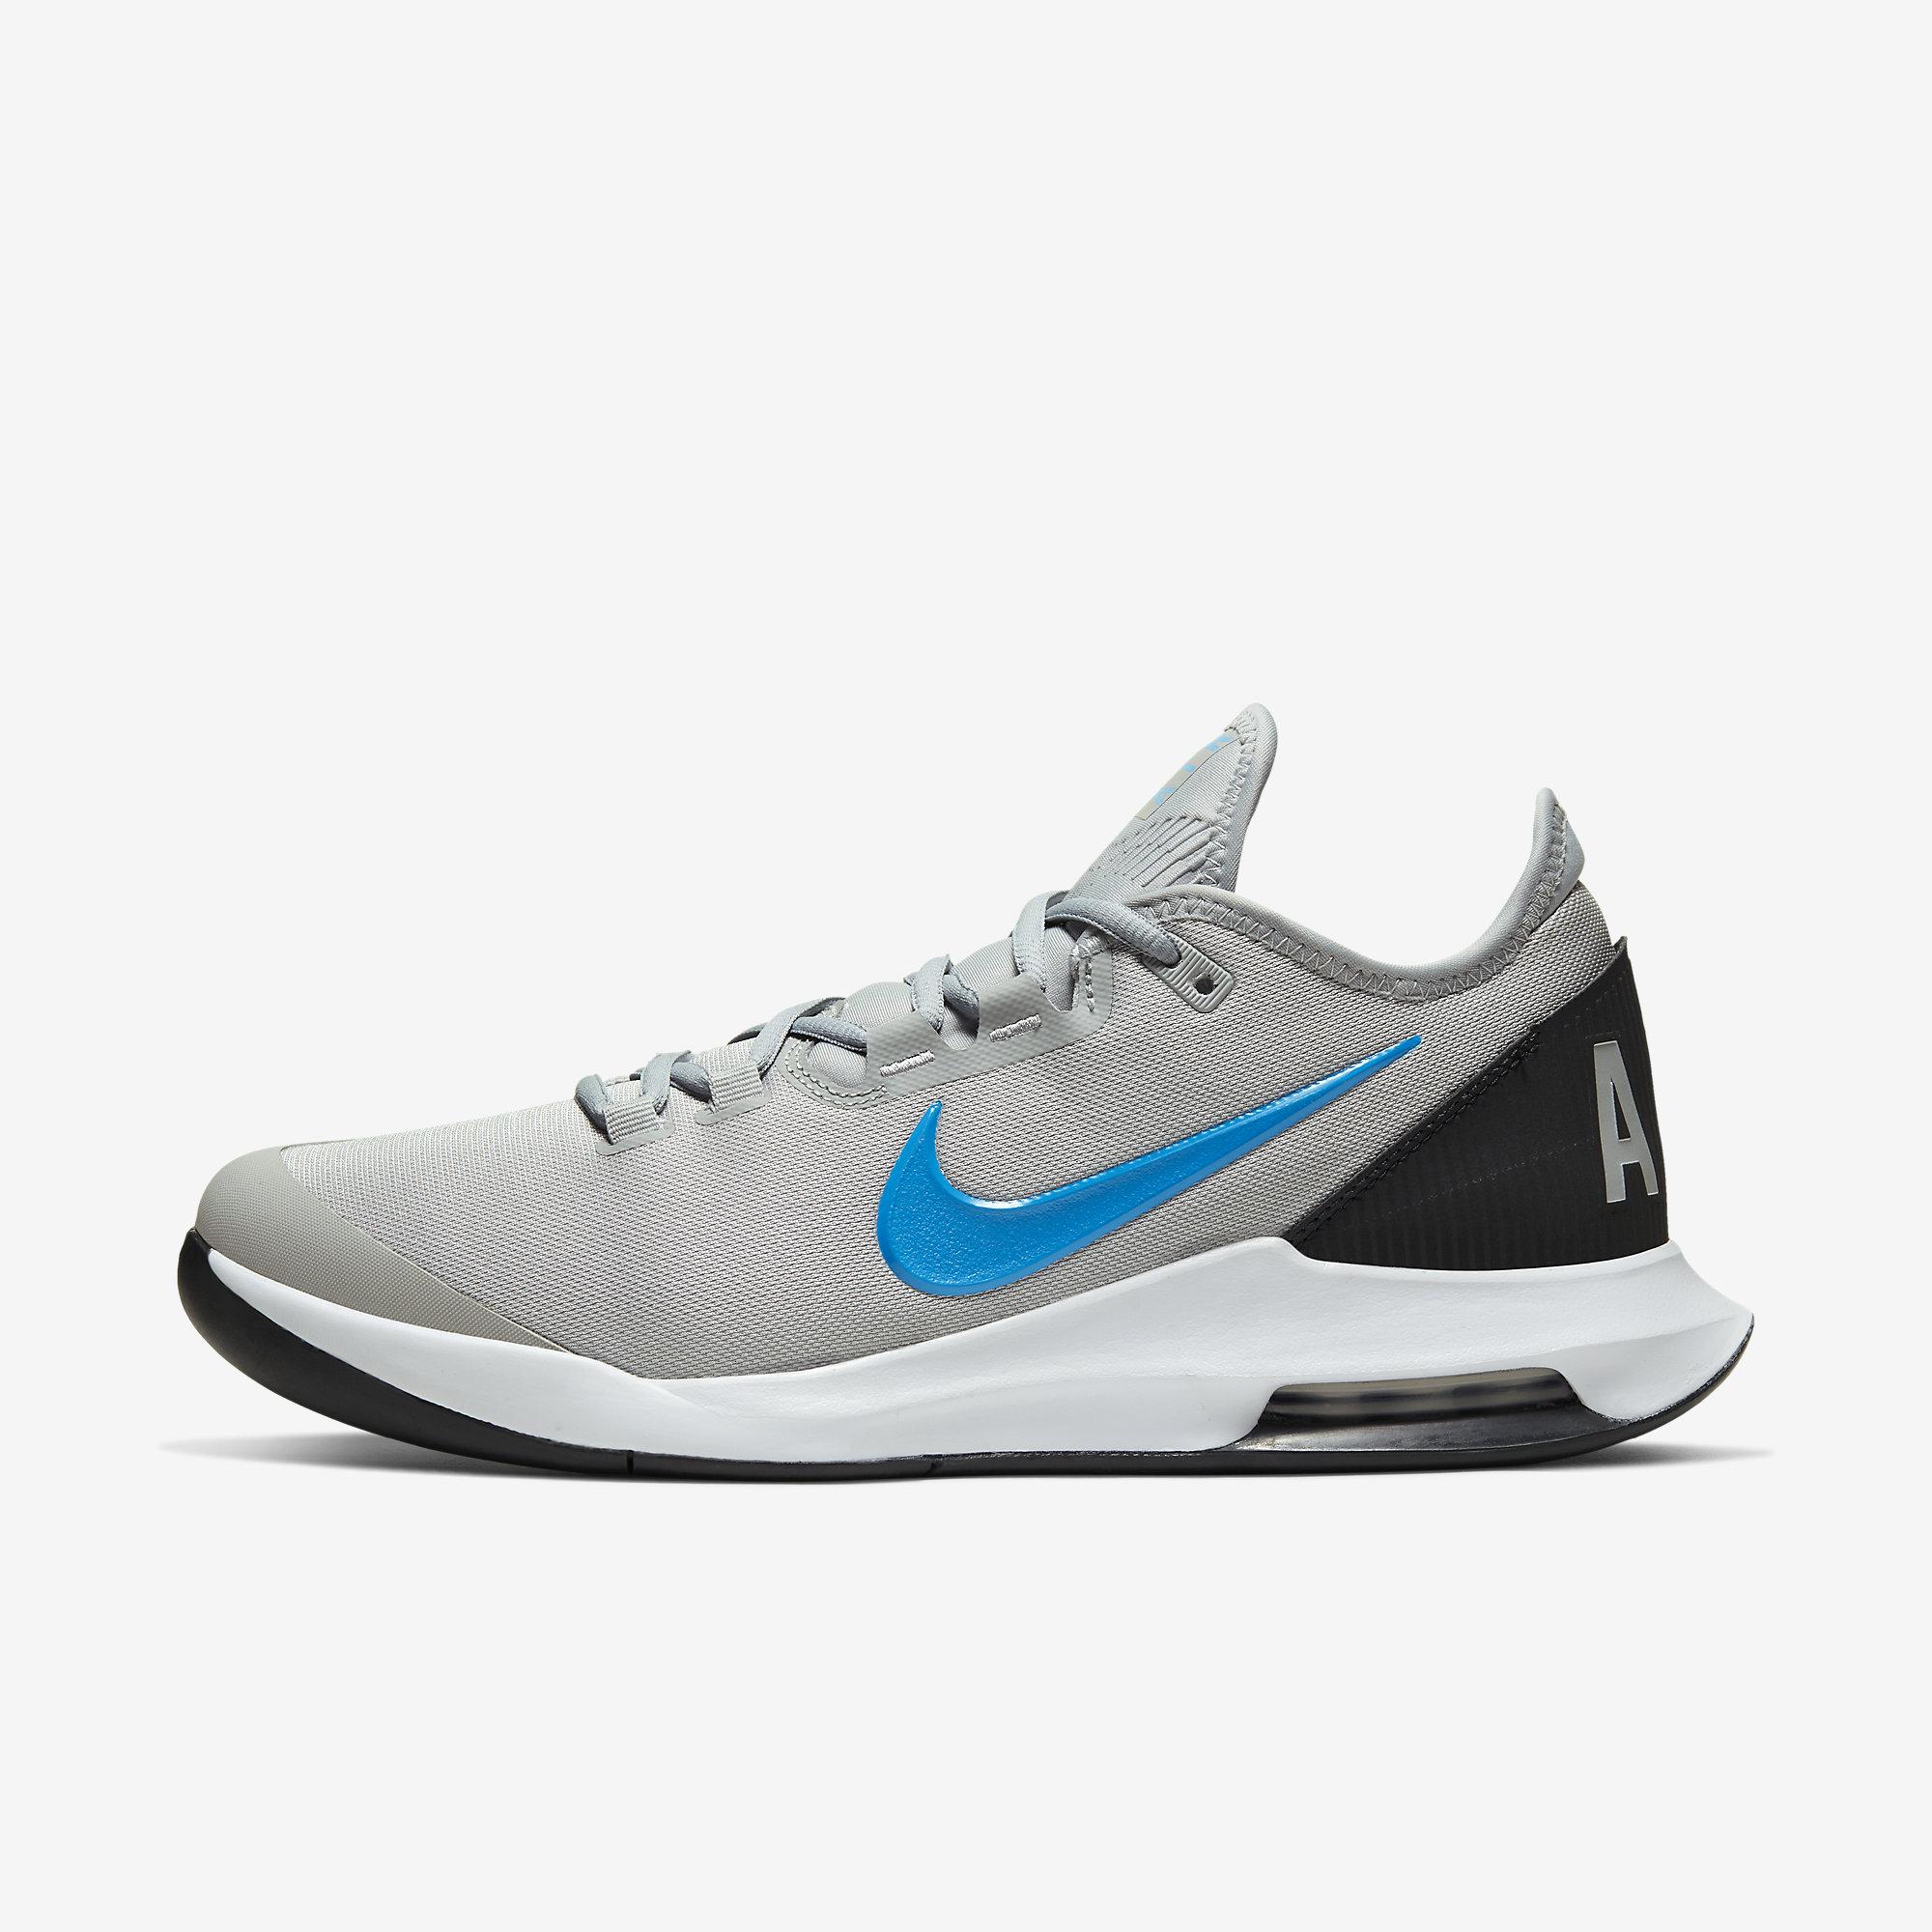 Nike Mens Air Max Wildcard Tennis Shoes - Grey/Blue/Black - Tennisnuts.com